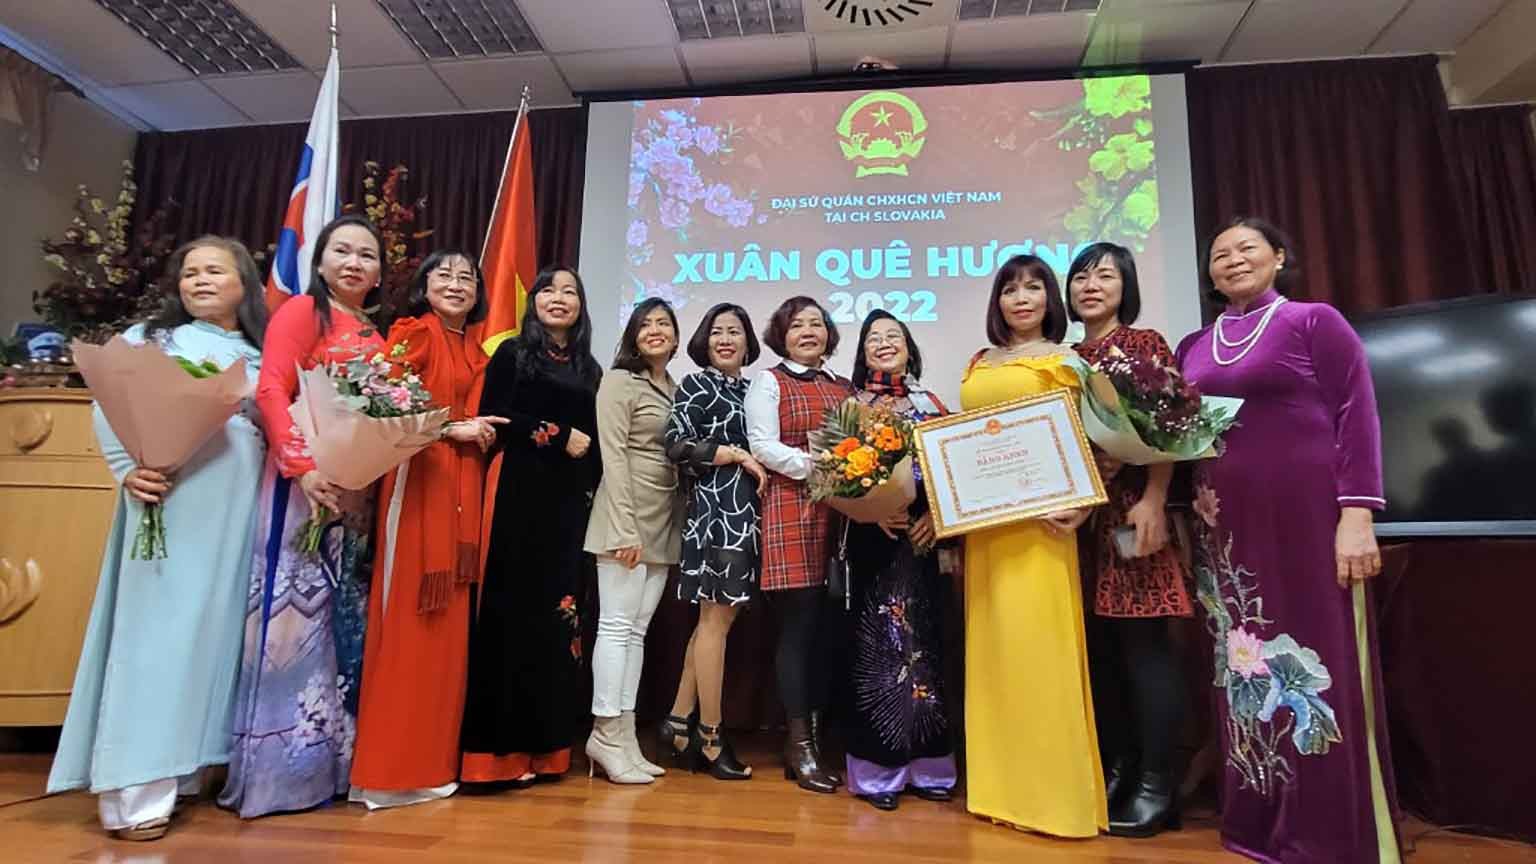 Chương trình Xuân Quê hương 2022 diễn ra trong không khí vui vẻ và đầm ấm, mang đậm nét văn hóa Việt Nam.